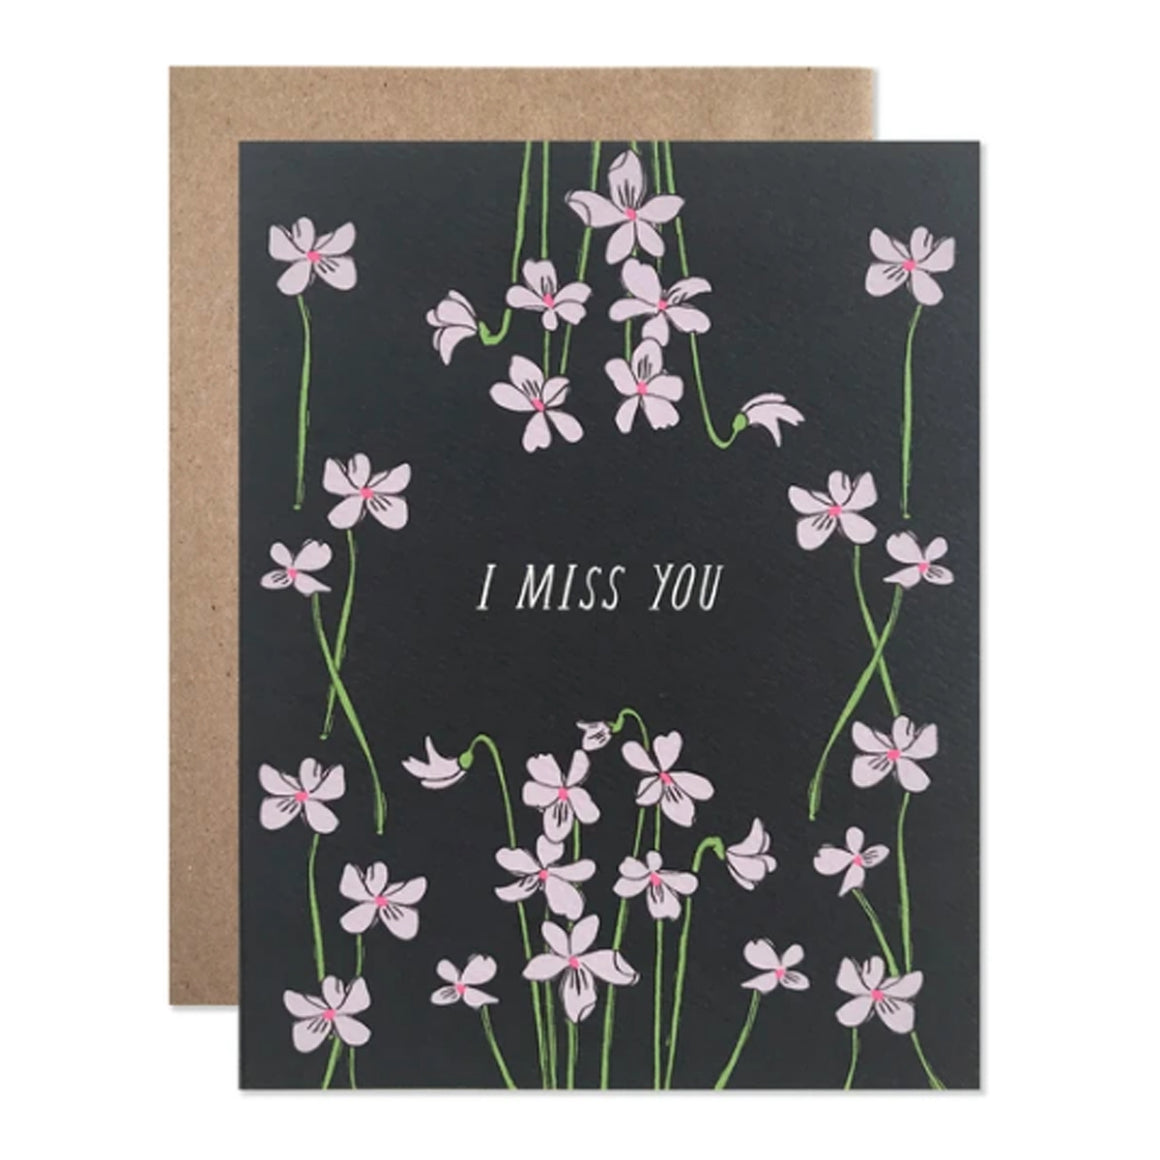 Miss You Violets Card - KESTREL